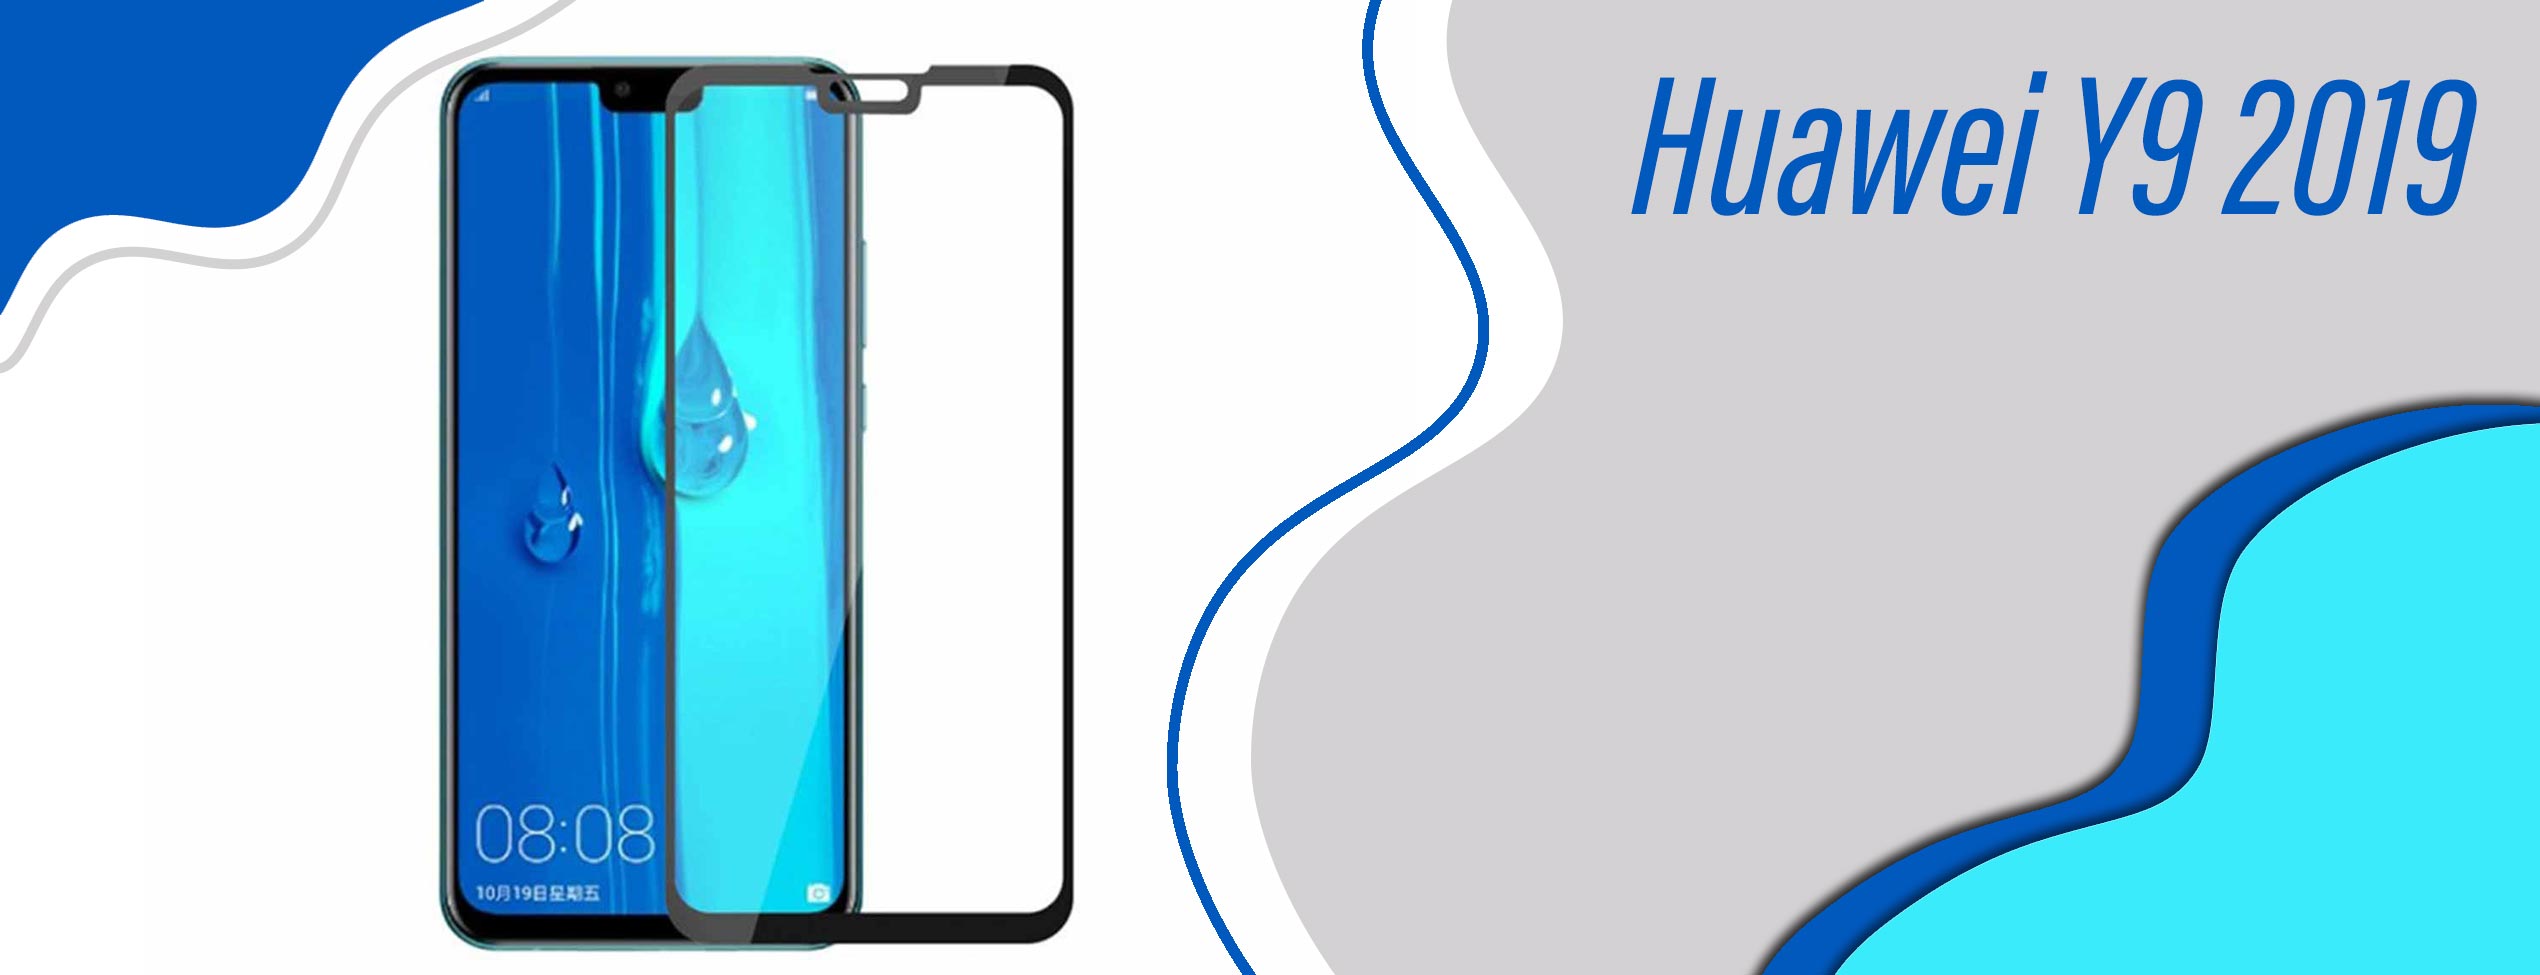 گلس فول تمام چسب موبایل هوآوی Huawei Y9 2019